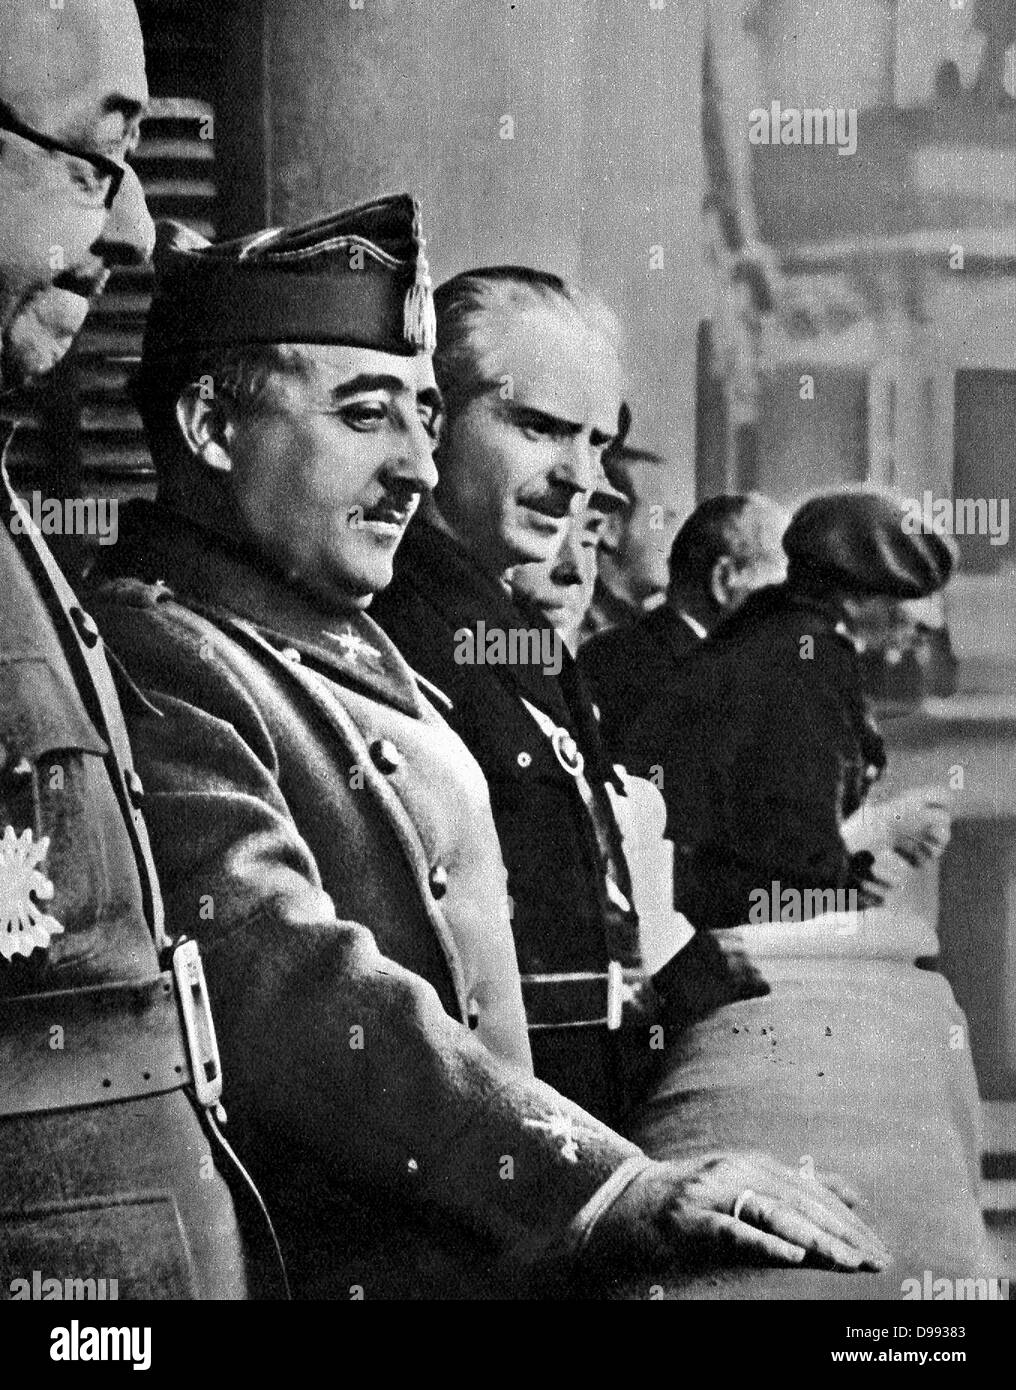 Francisco Franco (4 dicembre 1892 - 20 novembre 1975), Spagnolo generale e dittatore, capo di stato della Spagna a partire dal mese di ottobre 1936 (tutto il paese dal 1939), e de facto reggente della nominalmente restaurato Regno di Spagna dal 1947 fino alla sua morte nel novembre Foto Stock